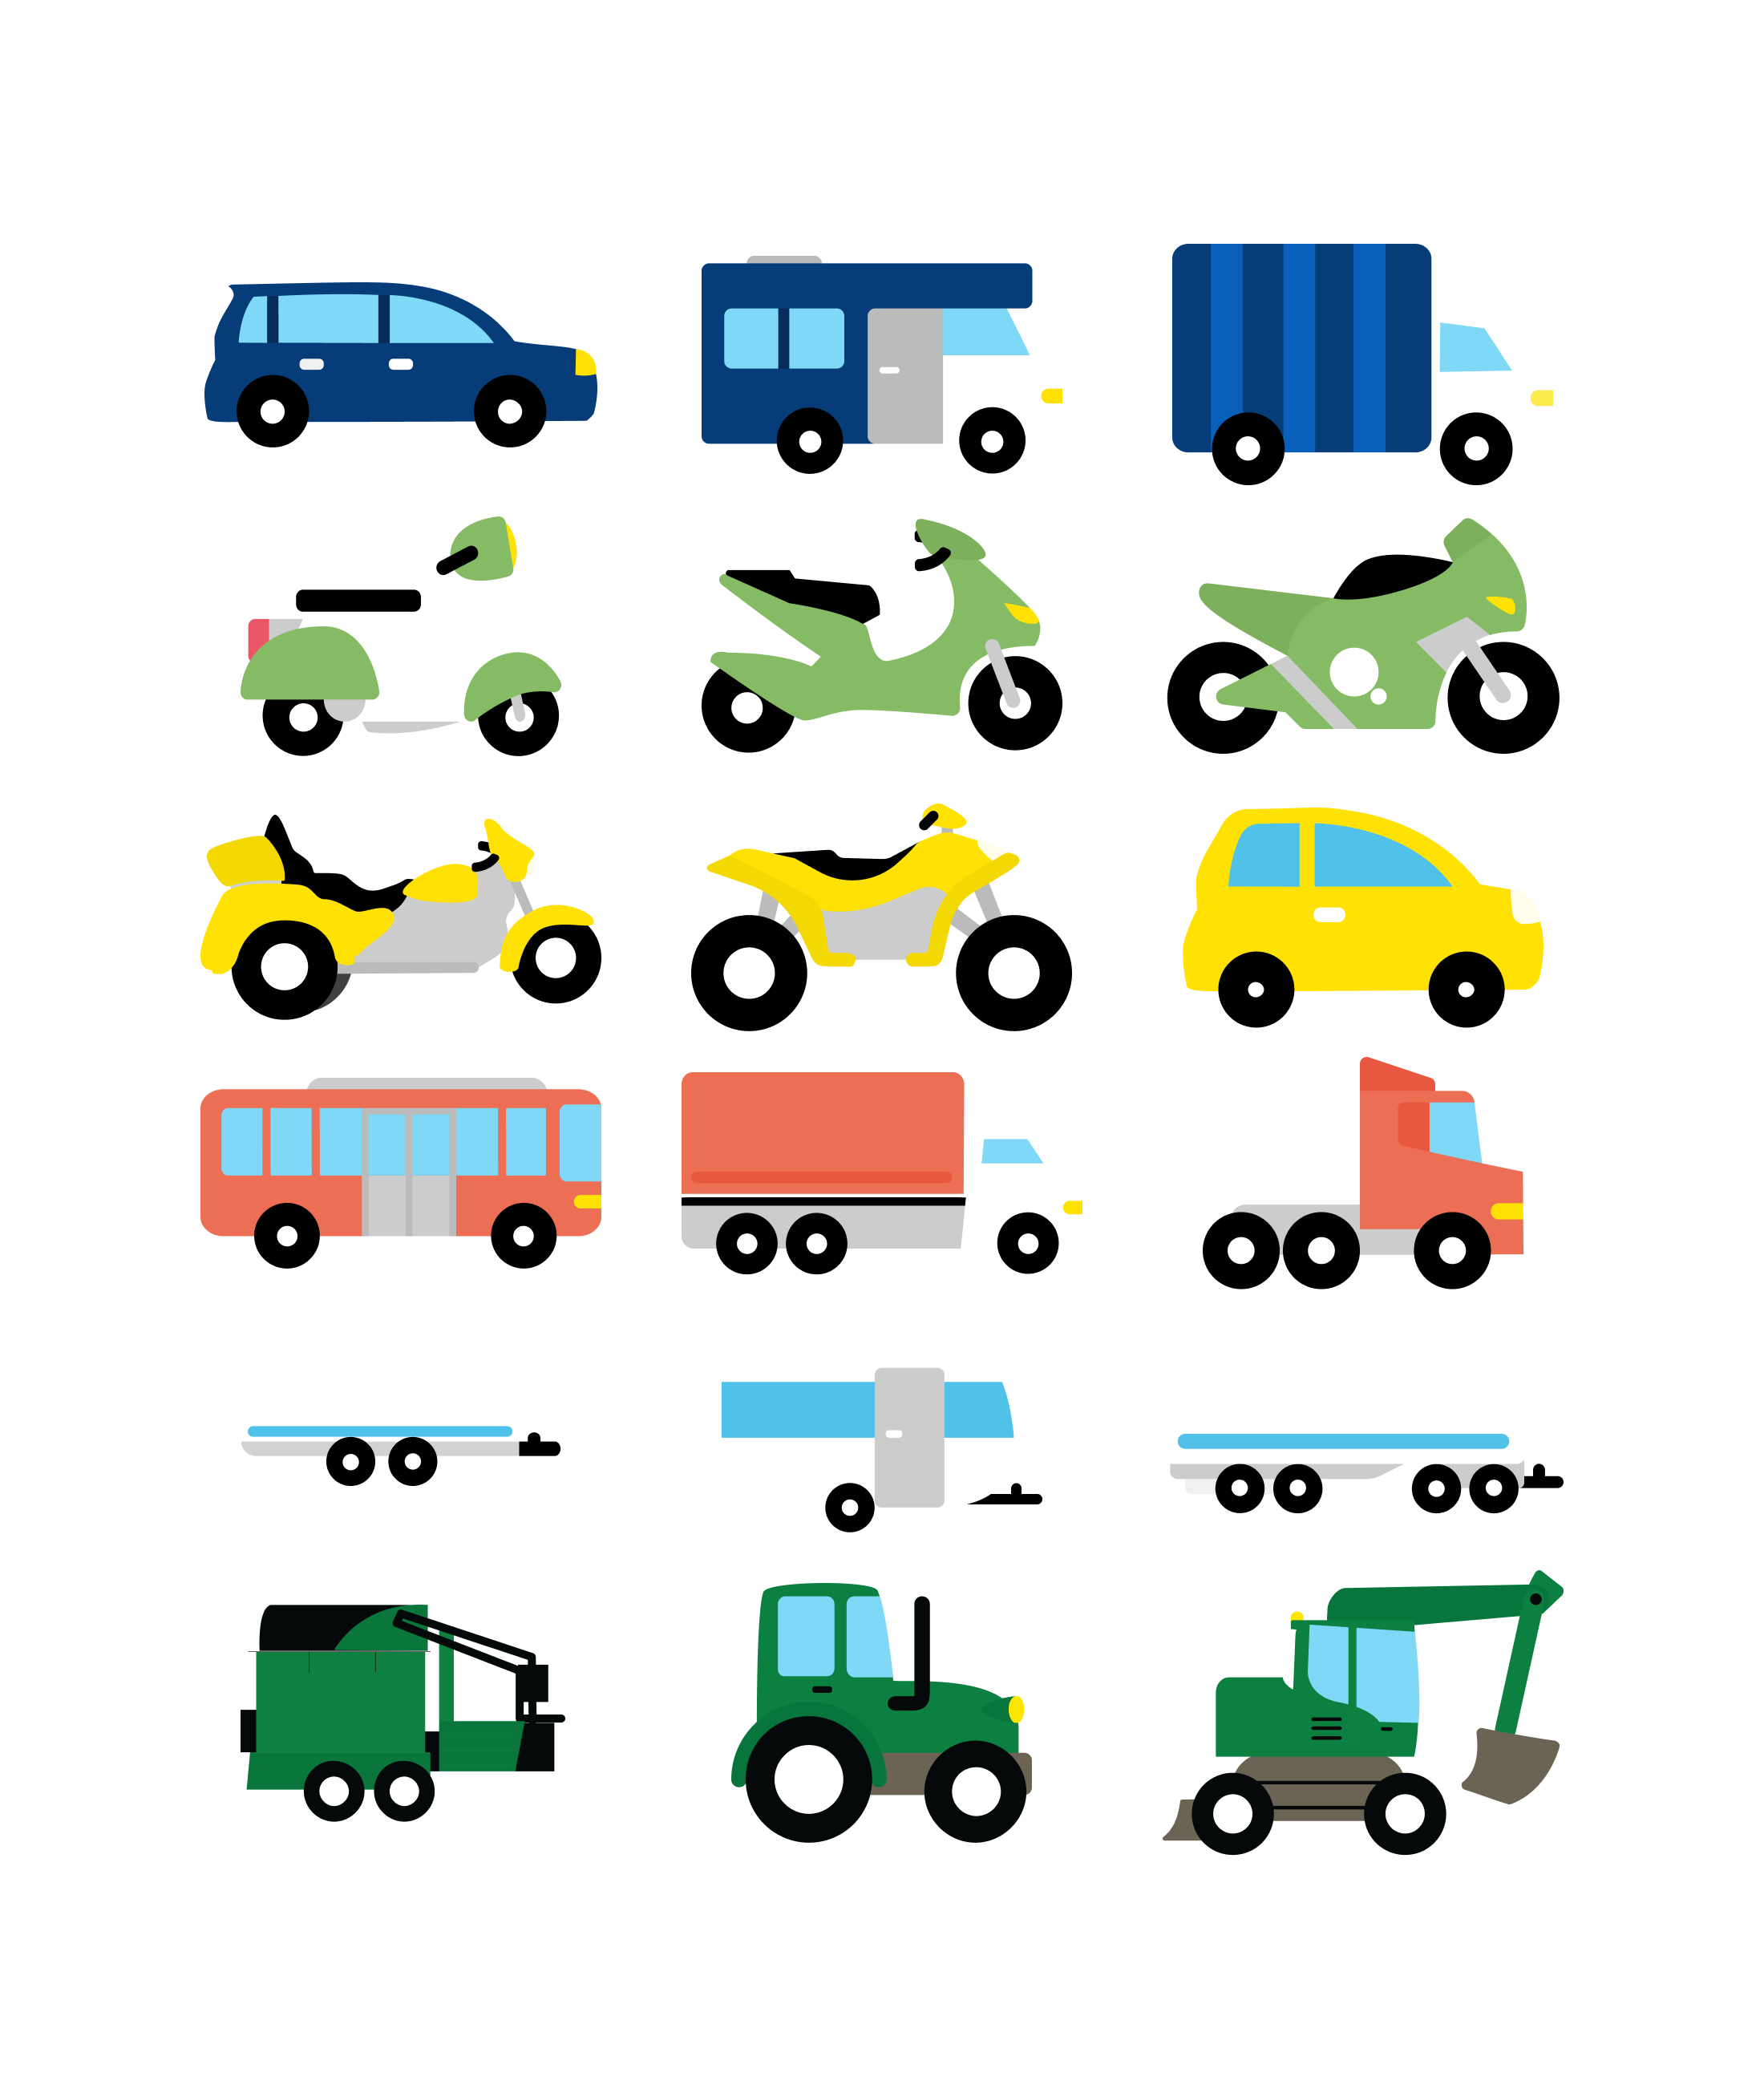 Overzicht van alle 15 soorten voertuigen